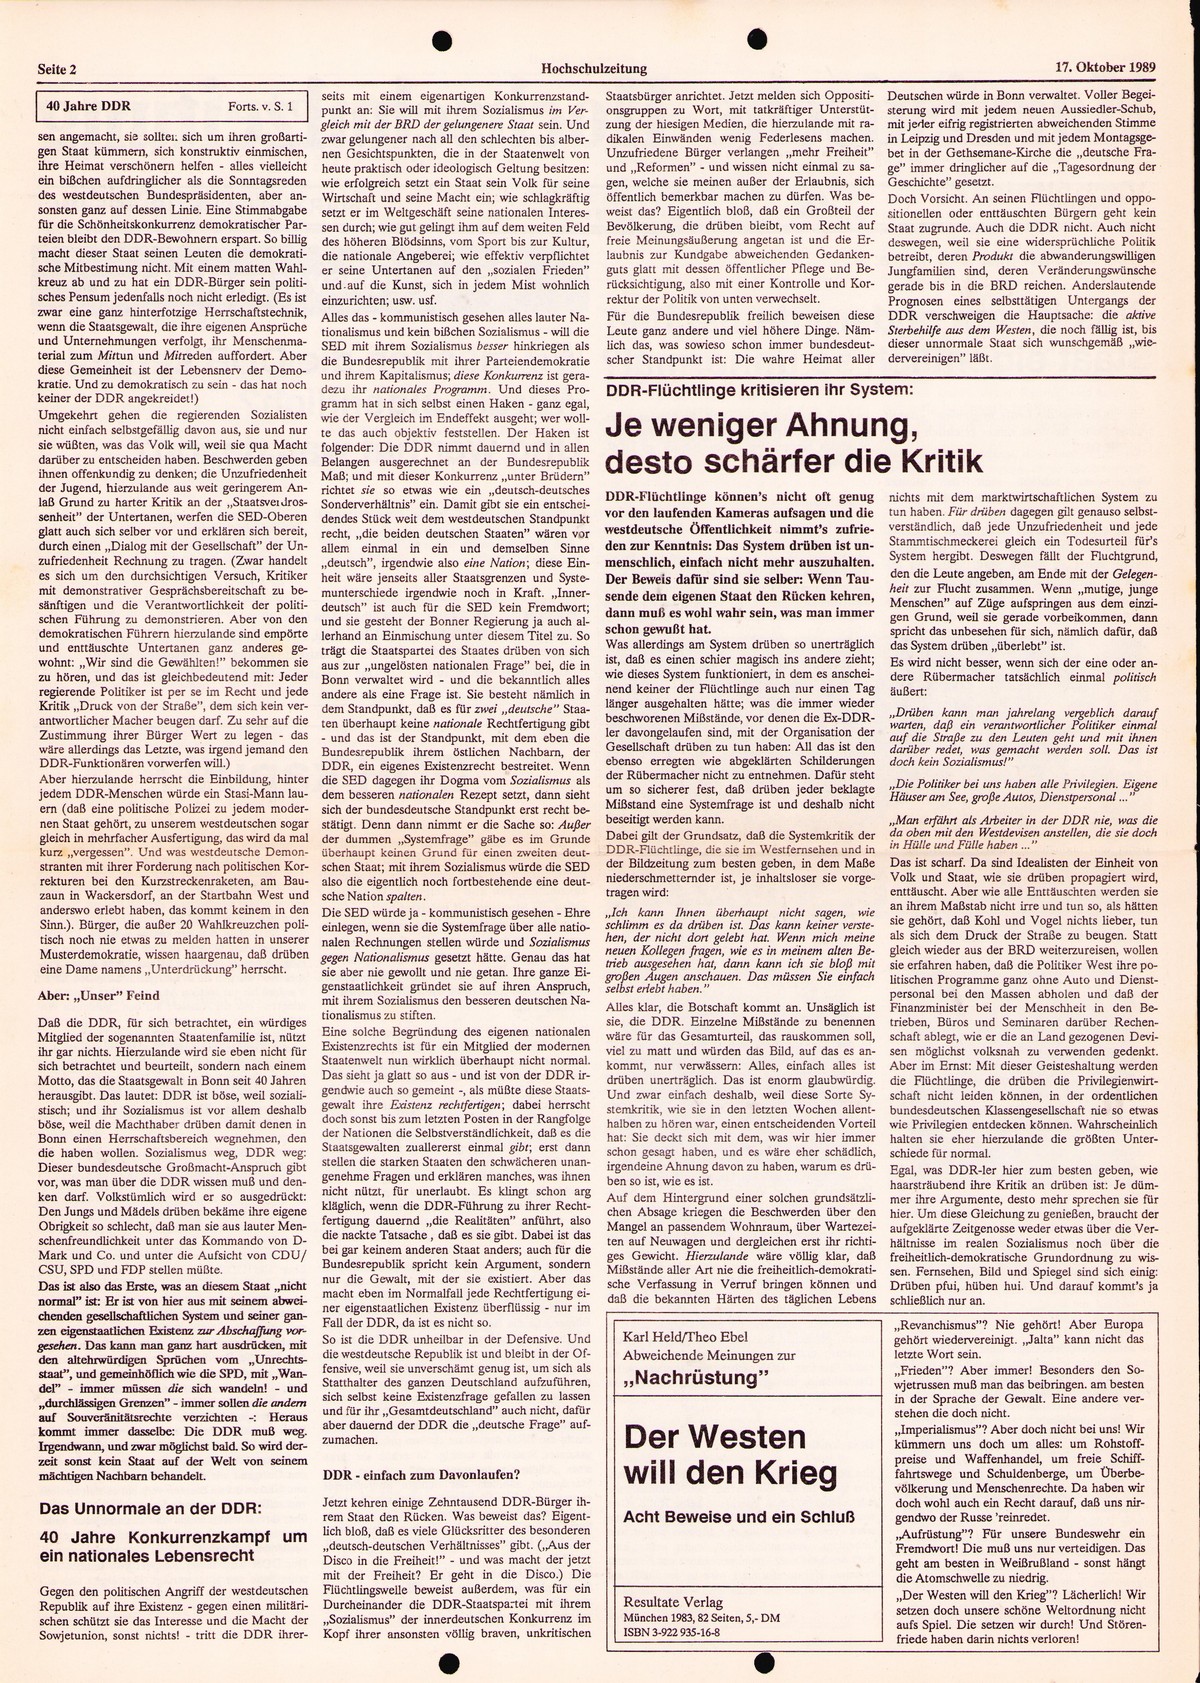 Ruhrgebiet_MG_Marxistische_Hochschulzeitung_19891017_002